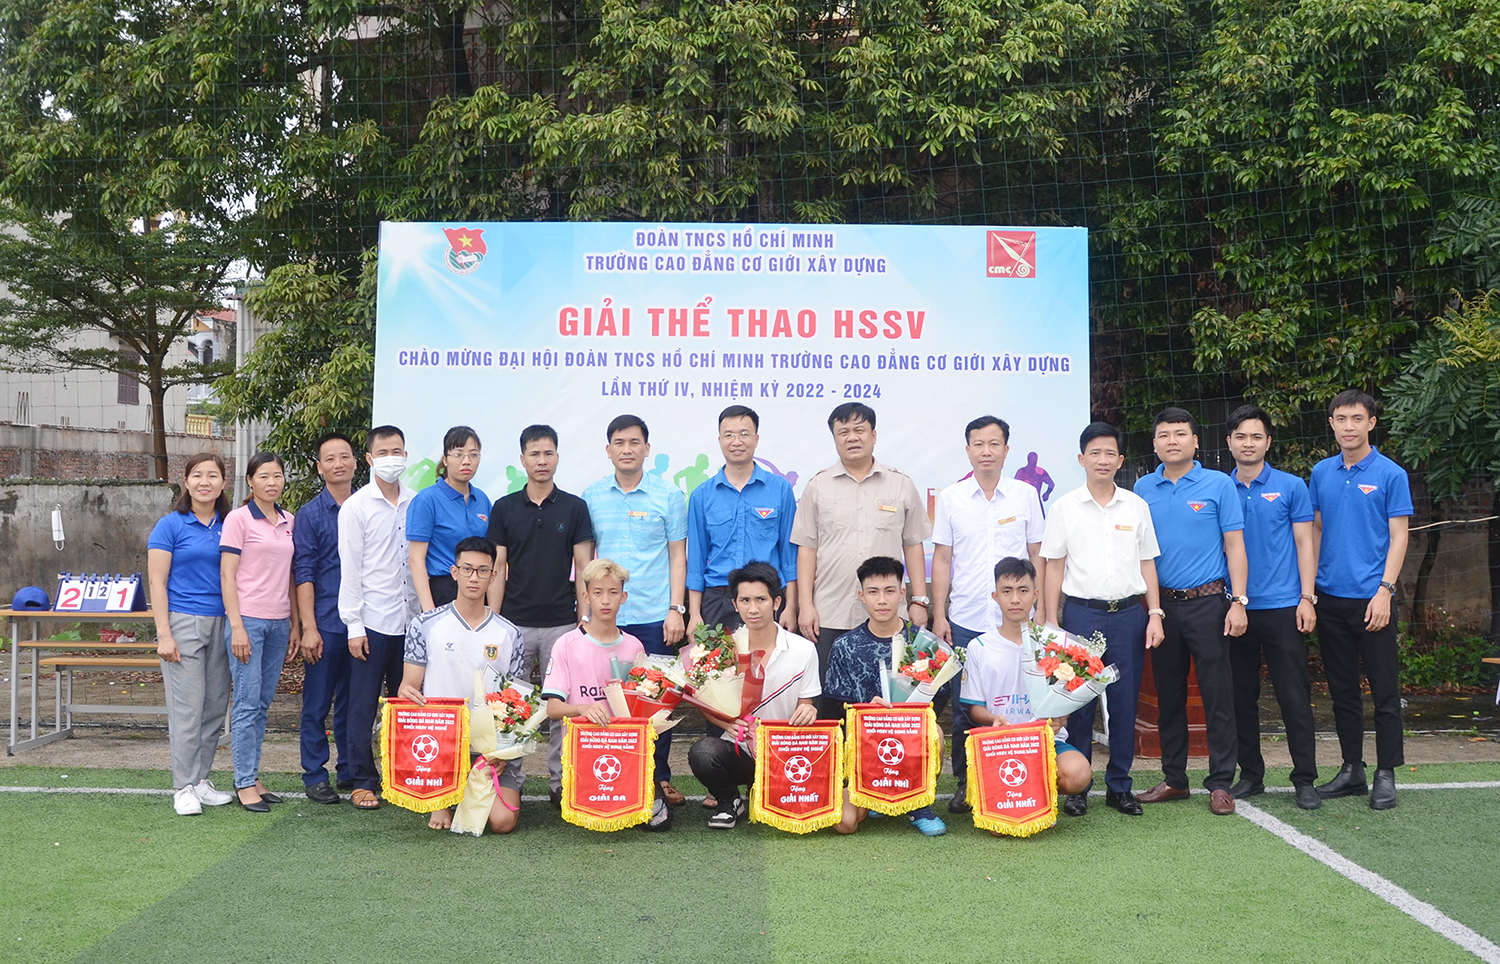 Bế mạc Giải thi đấu thể thao HSSV chào mừng Đại hội Đoàn TNCS Hồ Chí Minh trường Cao đẳng Cơ giới Xây dựng lần thứ IV, nhiệm kỳ 2022-2024